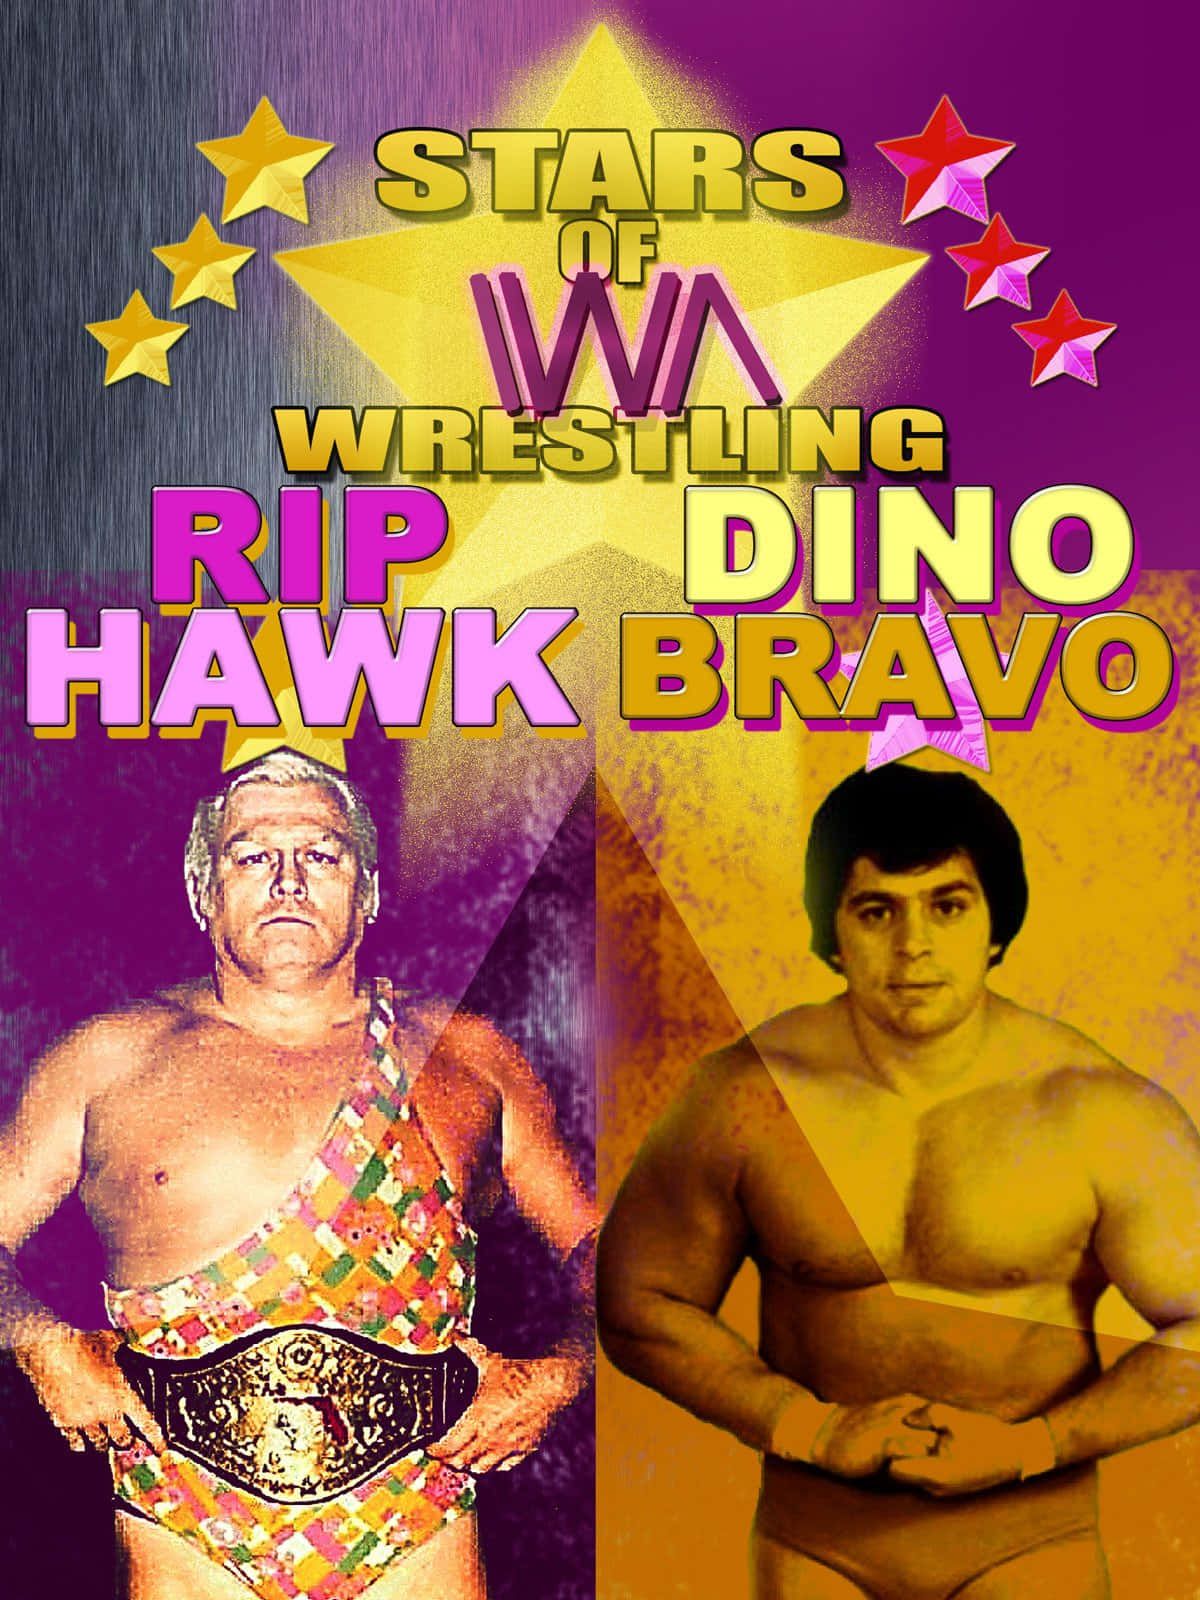 Dinobravo Und Rip Hawk Poster Wallpaper